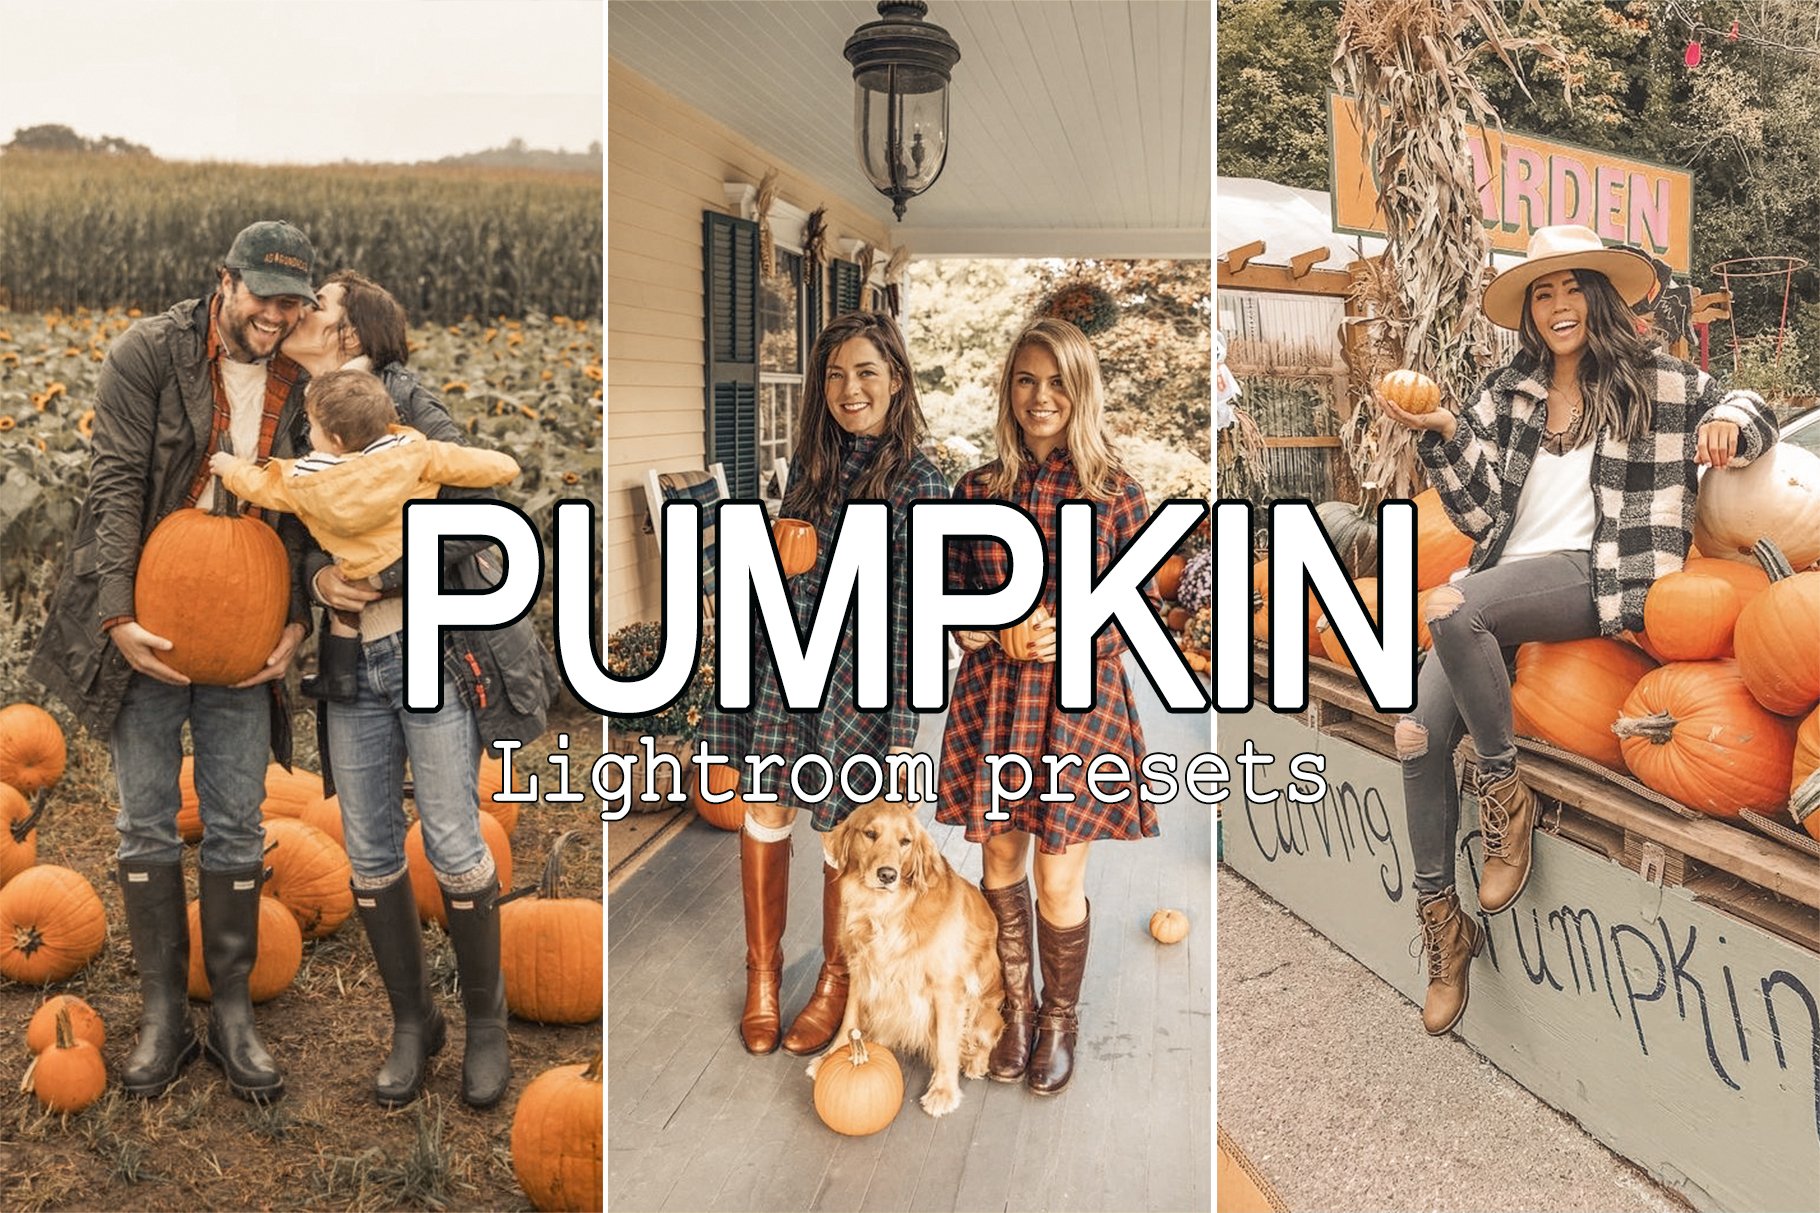 Pumpkin Lightroom Presetscover image.